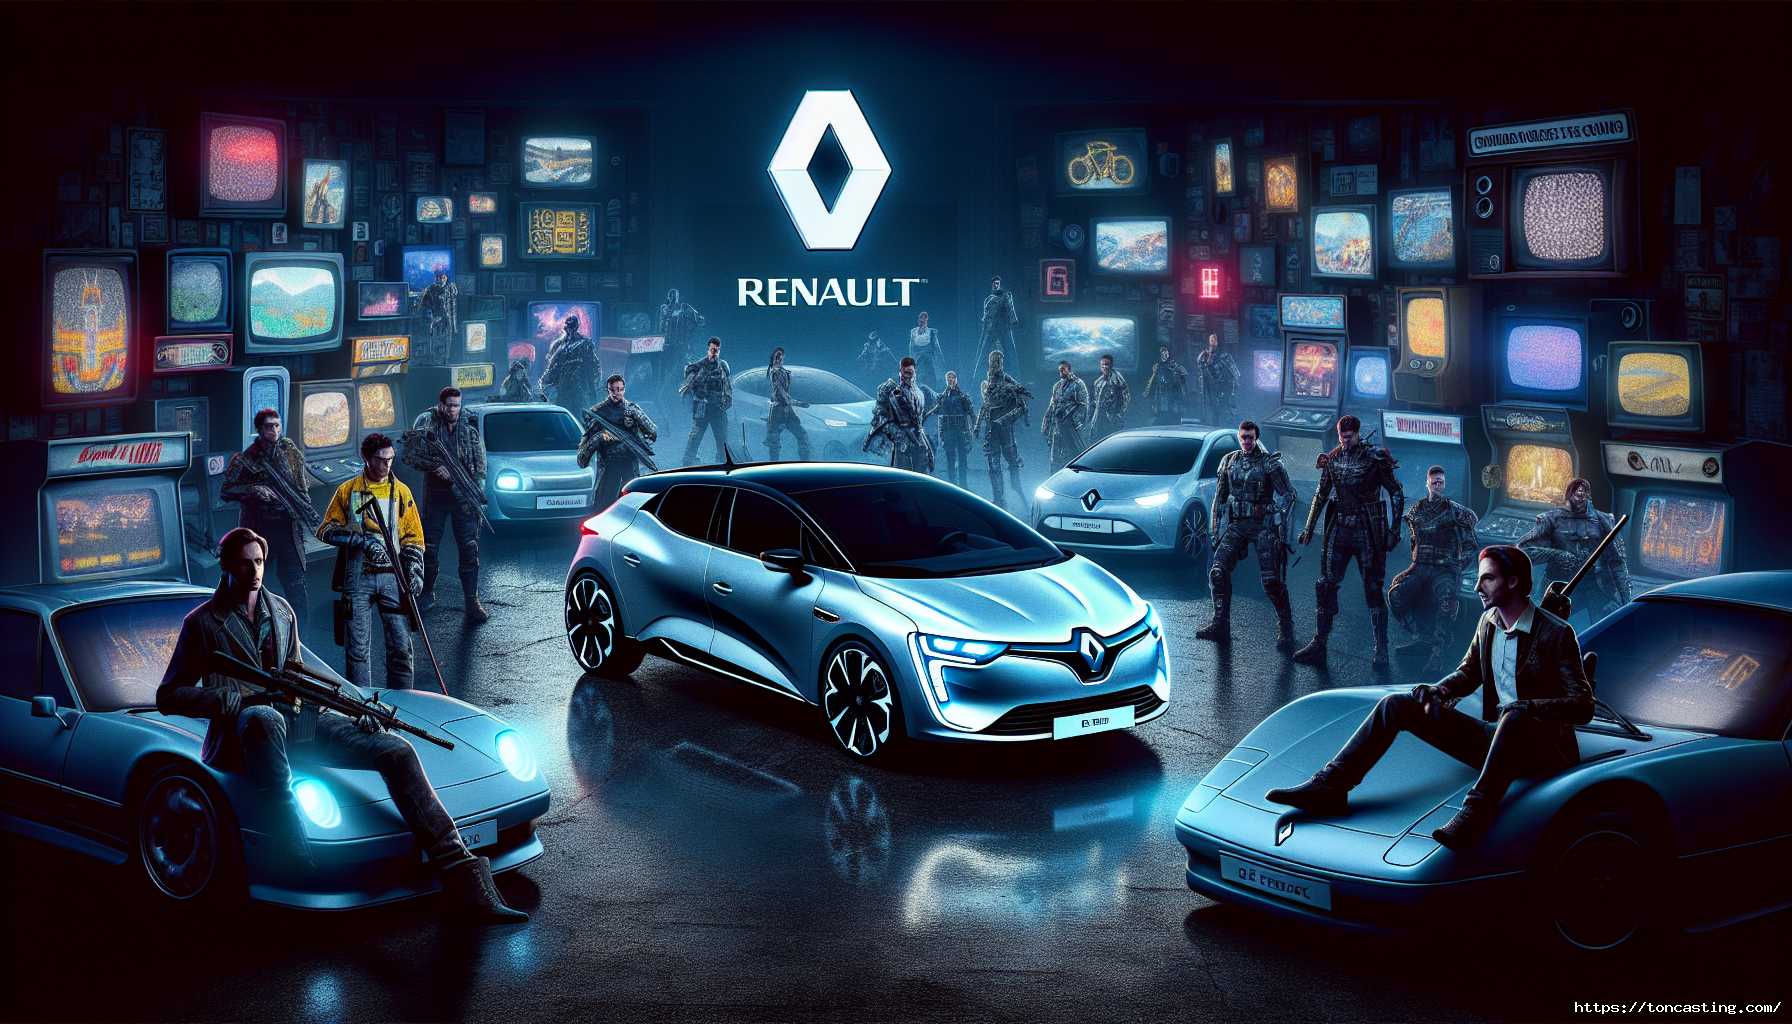 Renault s'invite dans vos jeux vidéo préférés : Roblox, Fortnite, Minecraft, Stray et bien d'autres